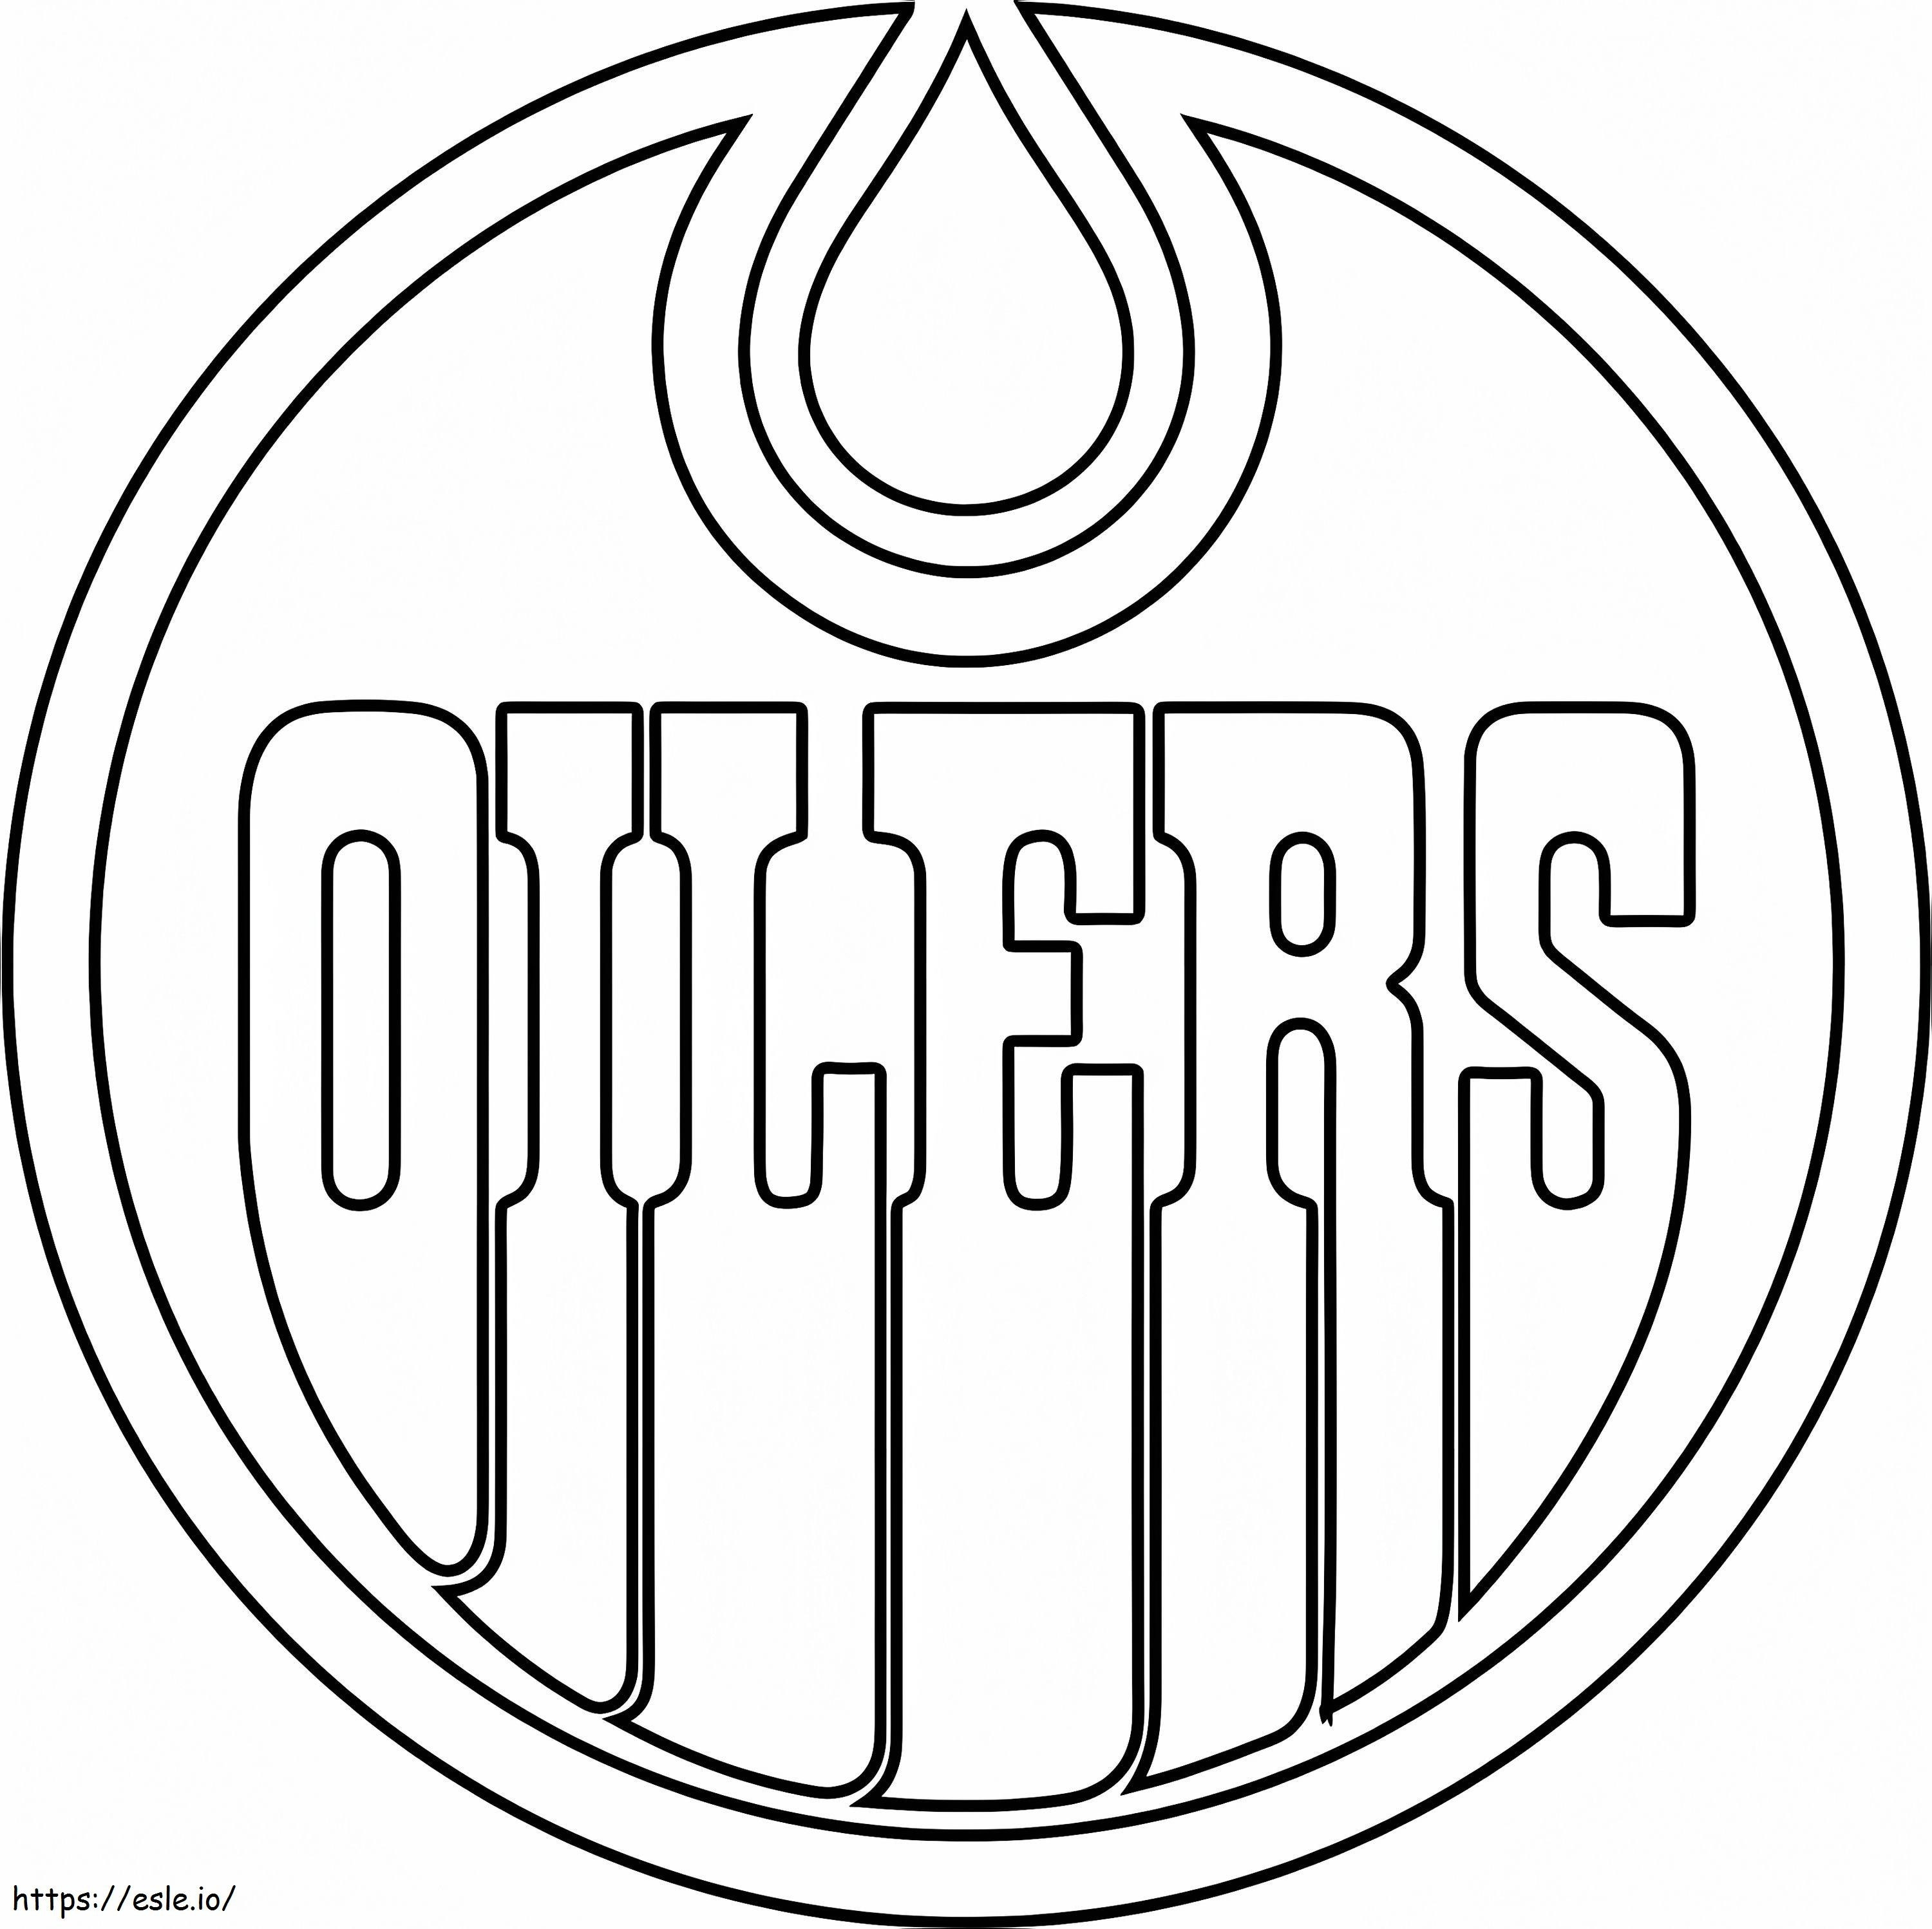 Edmonton Oilers Logosu boyama